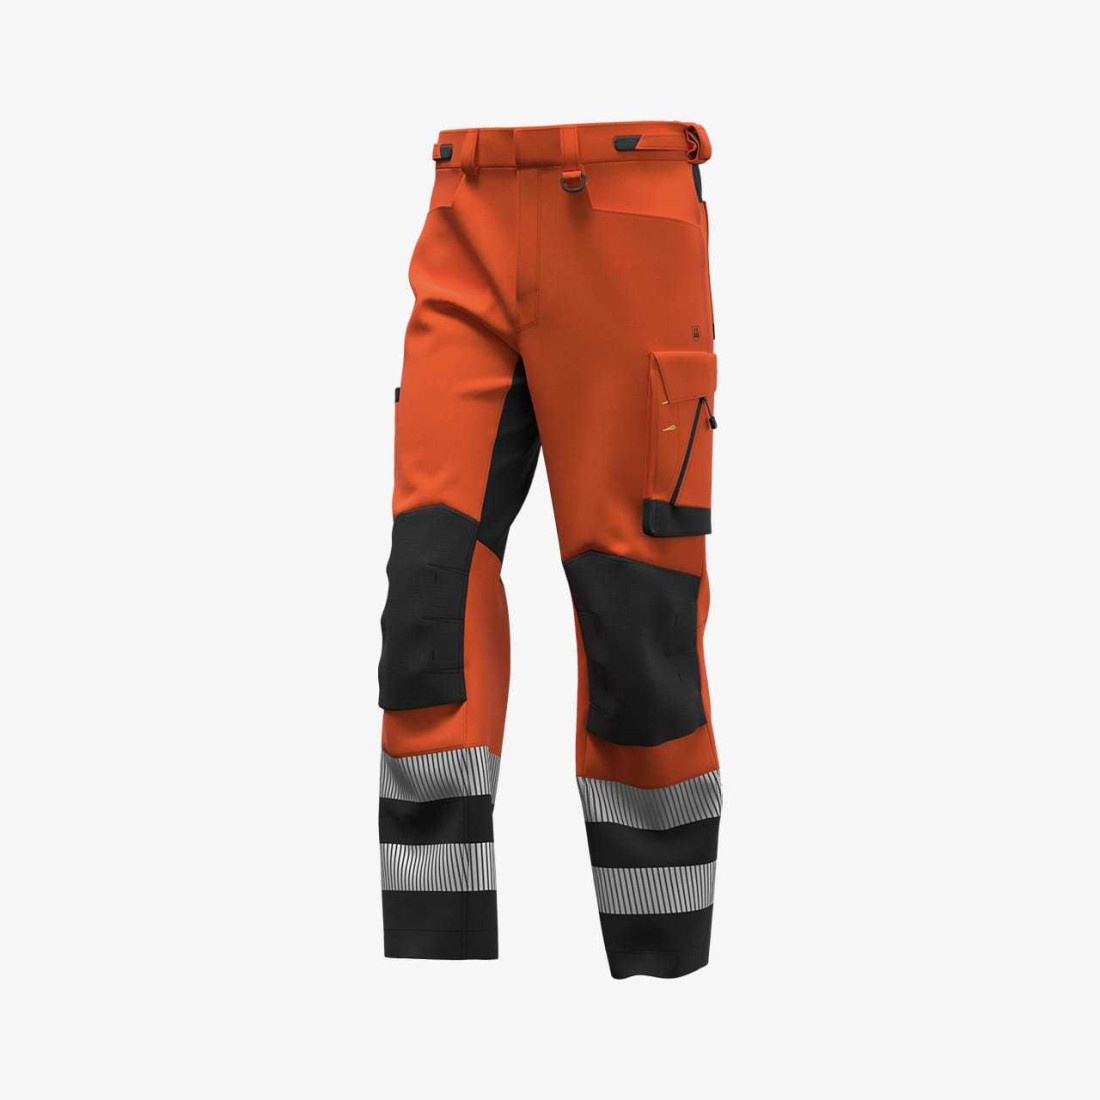 SCUHVTROM Pantalon haute visibilité pour hommes - Les vêtements de protection